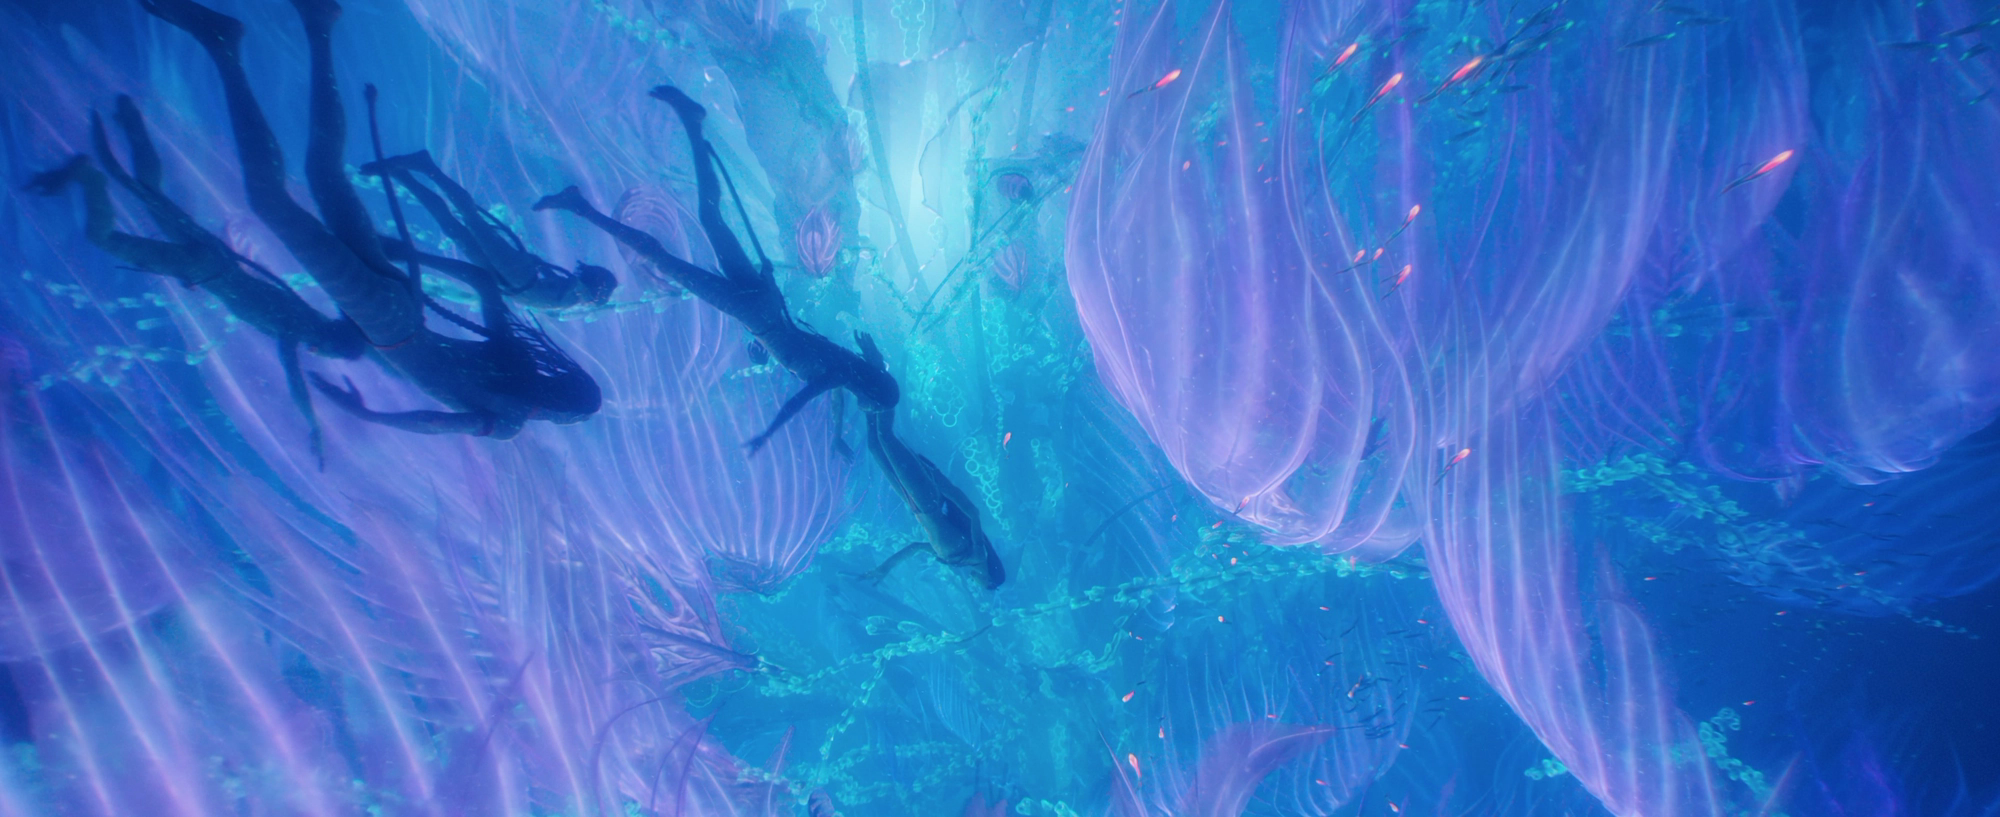 Avatar: The Way Of Water thực sự là một kỳ quan của thế giới chứ không chỉ là một bộ phim - Ảnh 6.